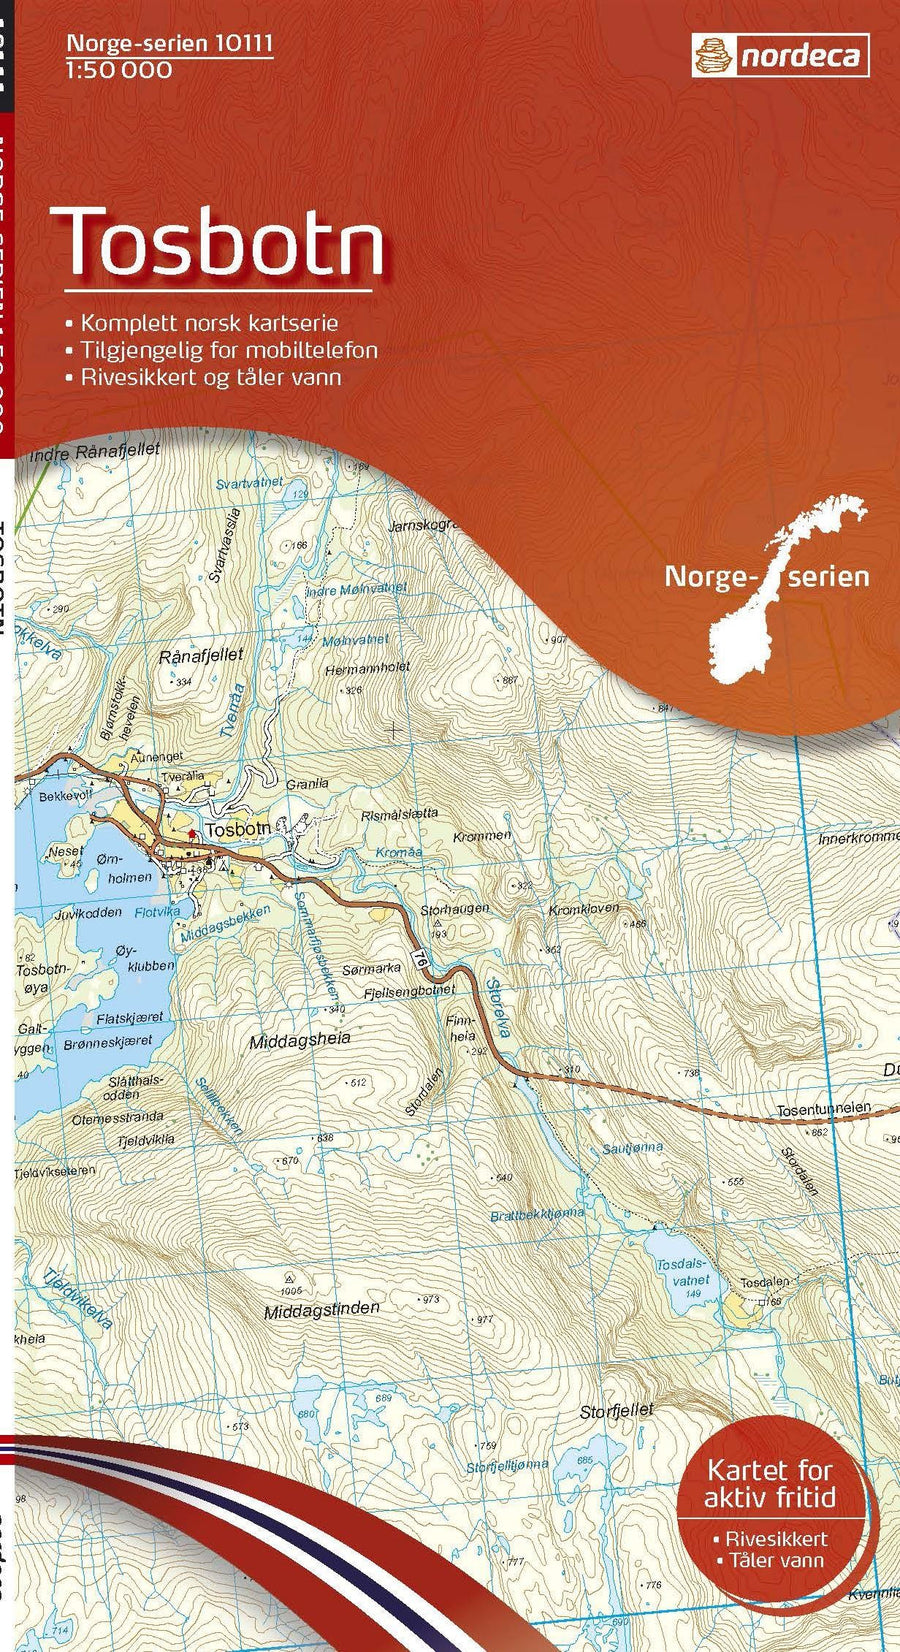 Carte de randonnée n° 10111 - Tosbotn (Norvège) | Nordeca - Norge-serien carte pliée Nordeca 